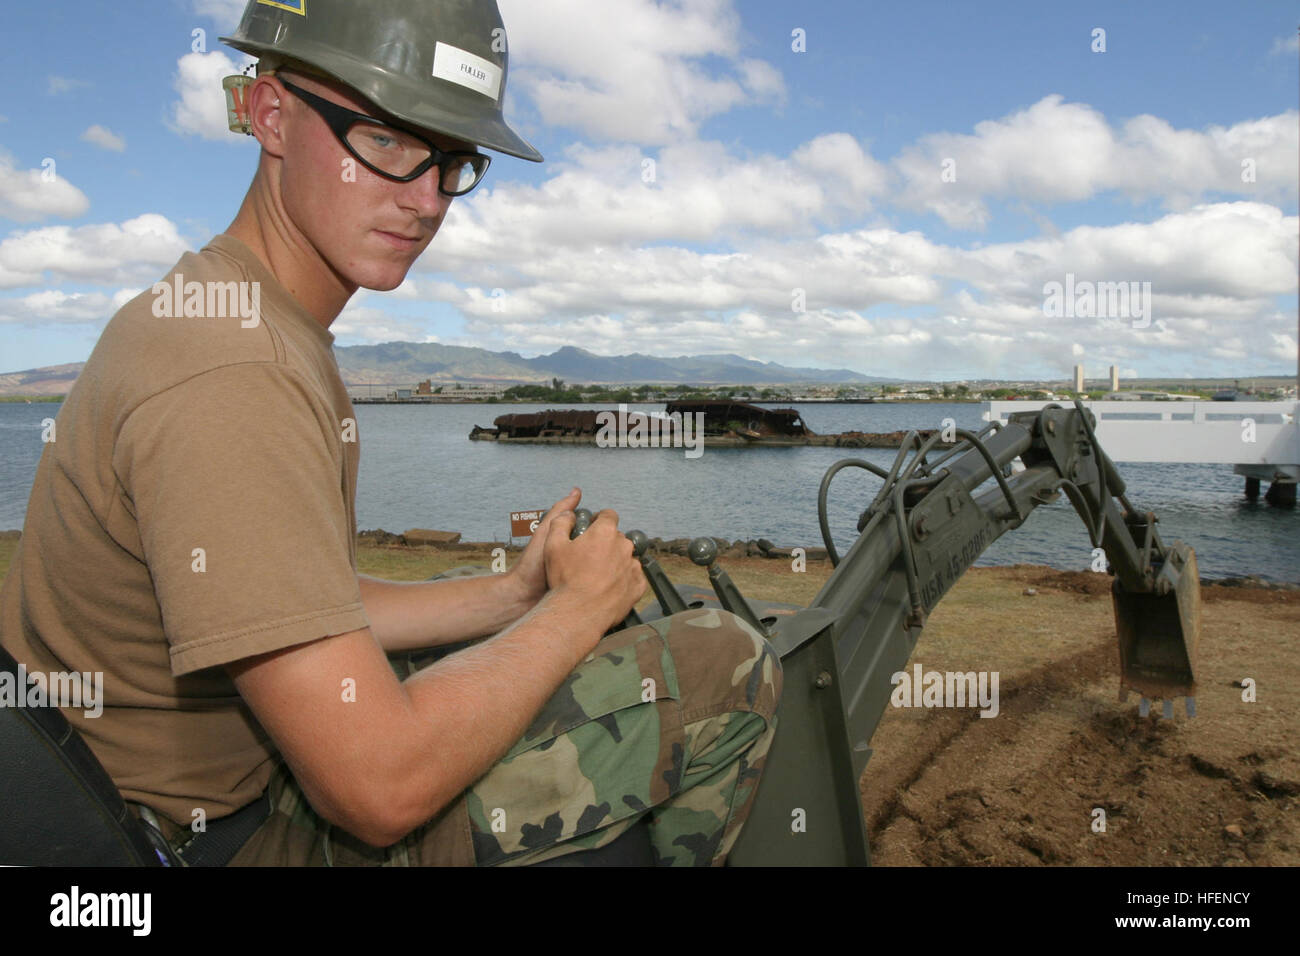 030826-N-3228G-001 Pearl Harbor, Hawaii (Aug. 26, 2003) -- opérateur de l'équipement Construction Apprenti Ryan Fuller affectés à la construction de l'unité du bataillon 413 (CBU-413) supprime la couverture du sol de la pelouse de l'USS Utah mémorial sur l'île de Ford. La station navale Pearl Harbor Premier lieutenant équipage est l'aménagement paysager autour de Pearl Harbor dans le cadre d'un projet d'embellissement en cours avec l'aide de la CBU-413. U.s. Navy photo by PhotographerÕs Mate 1re classe William R. Goodwin. (Libéré) US Navy 030827-N-3228G-001 Opérateur de l'équipement Construction Apprenti Ryan Fuller attribué Banque D'Images